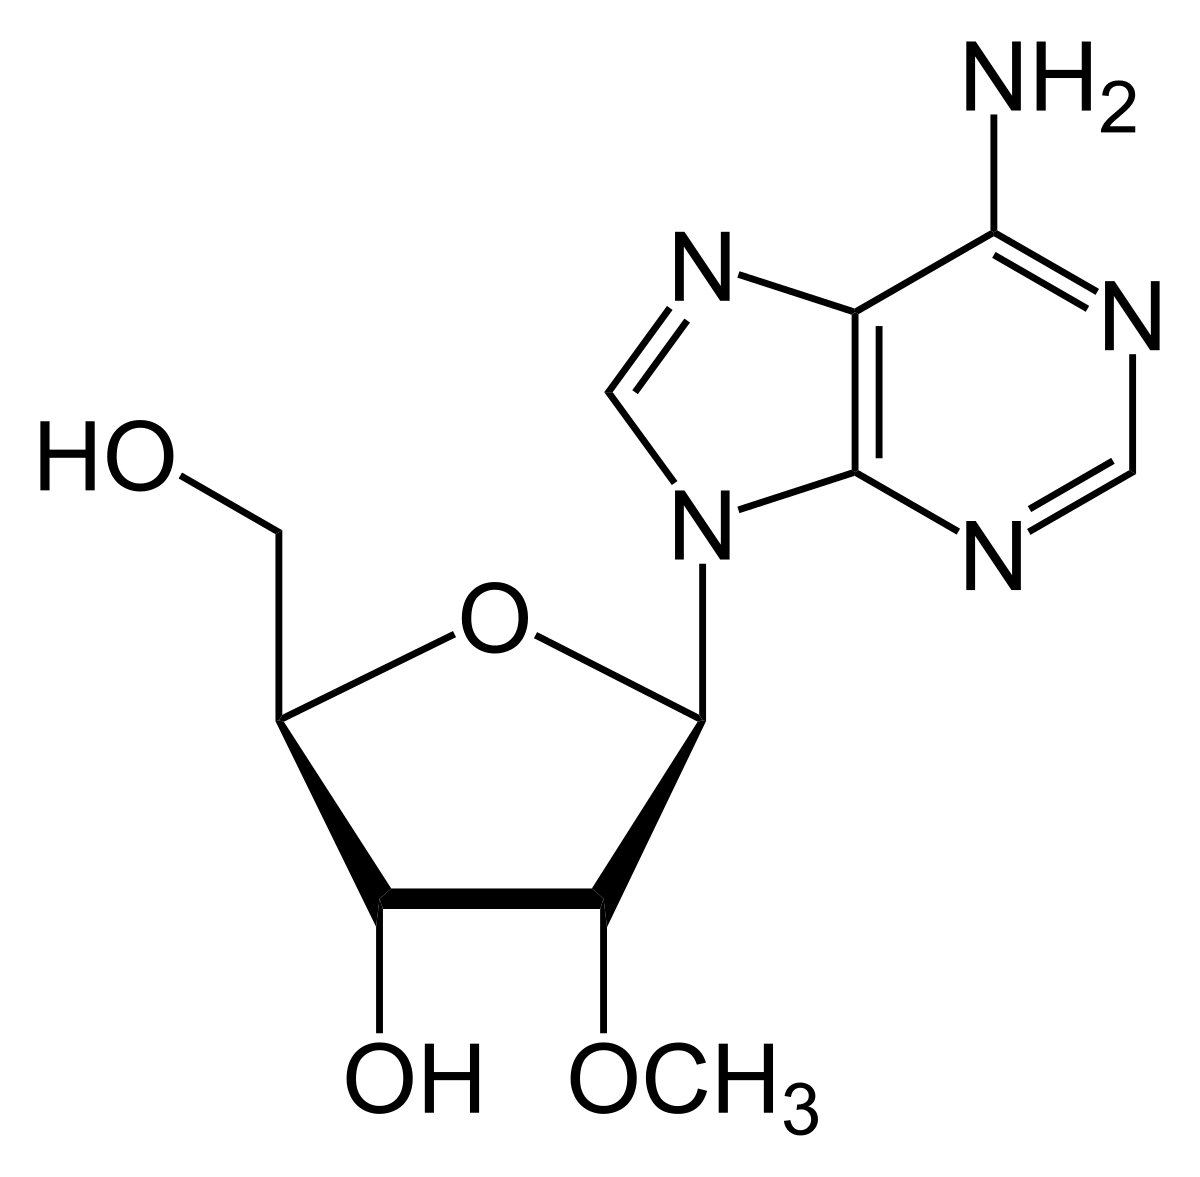 2'-O-methyl-adenosine, a modified adenosine.